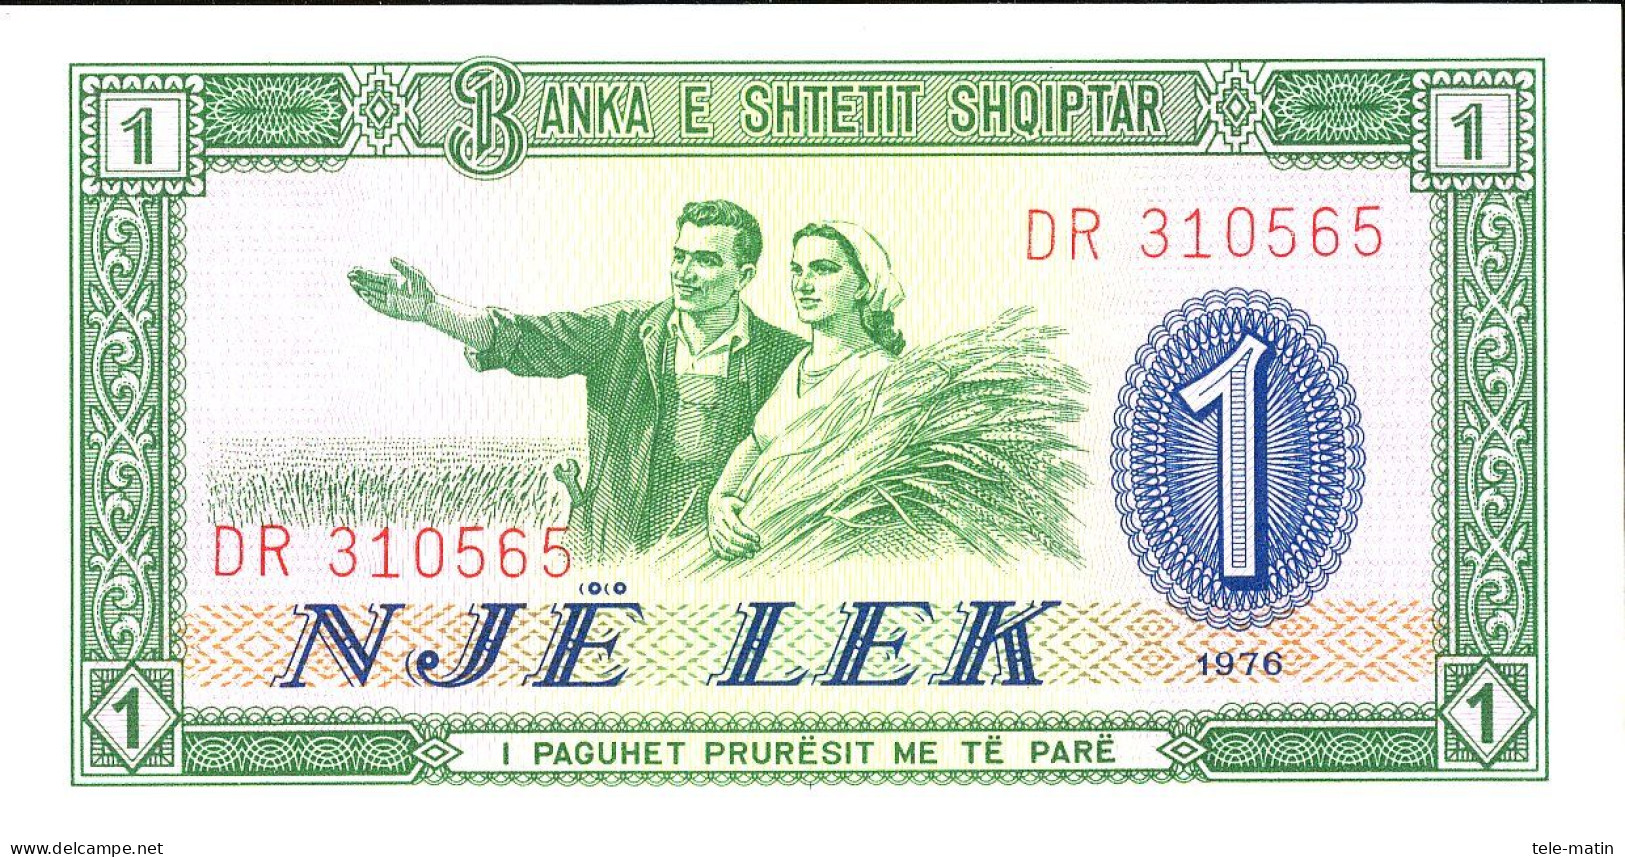 6 Billets De L'Albanie De 1957 A 1976 - Albania